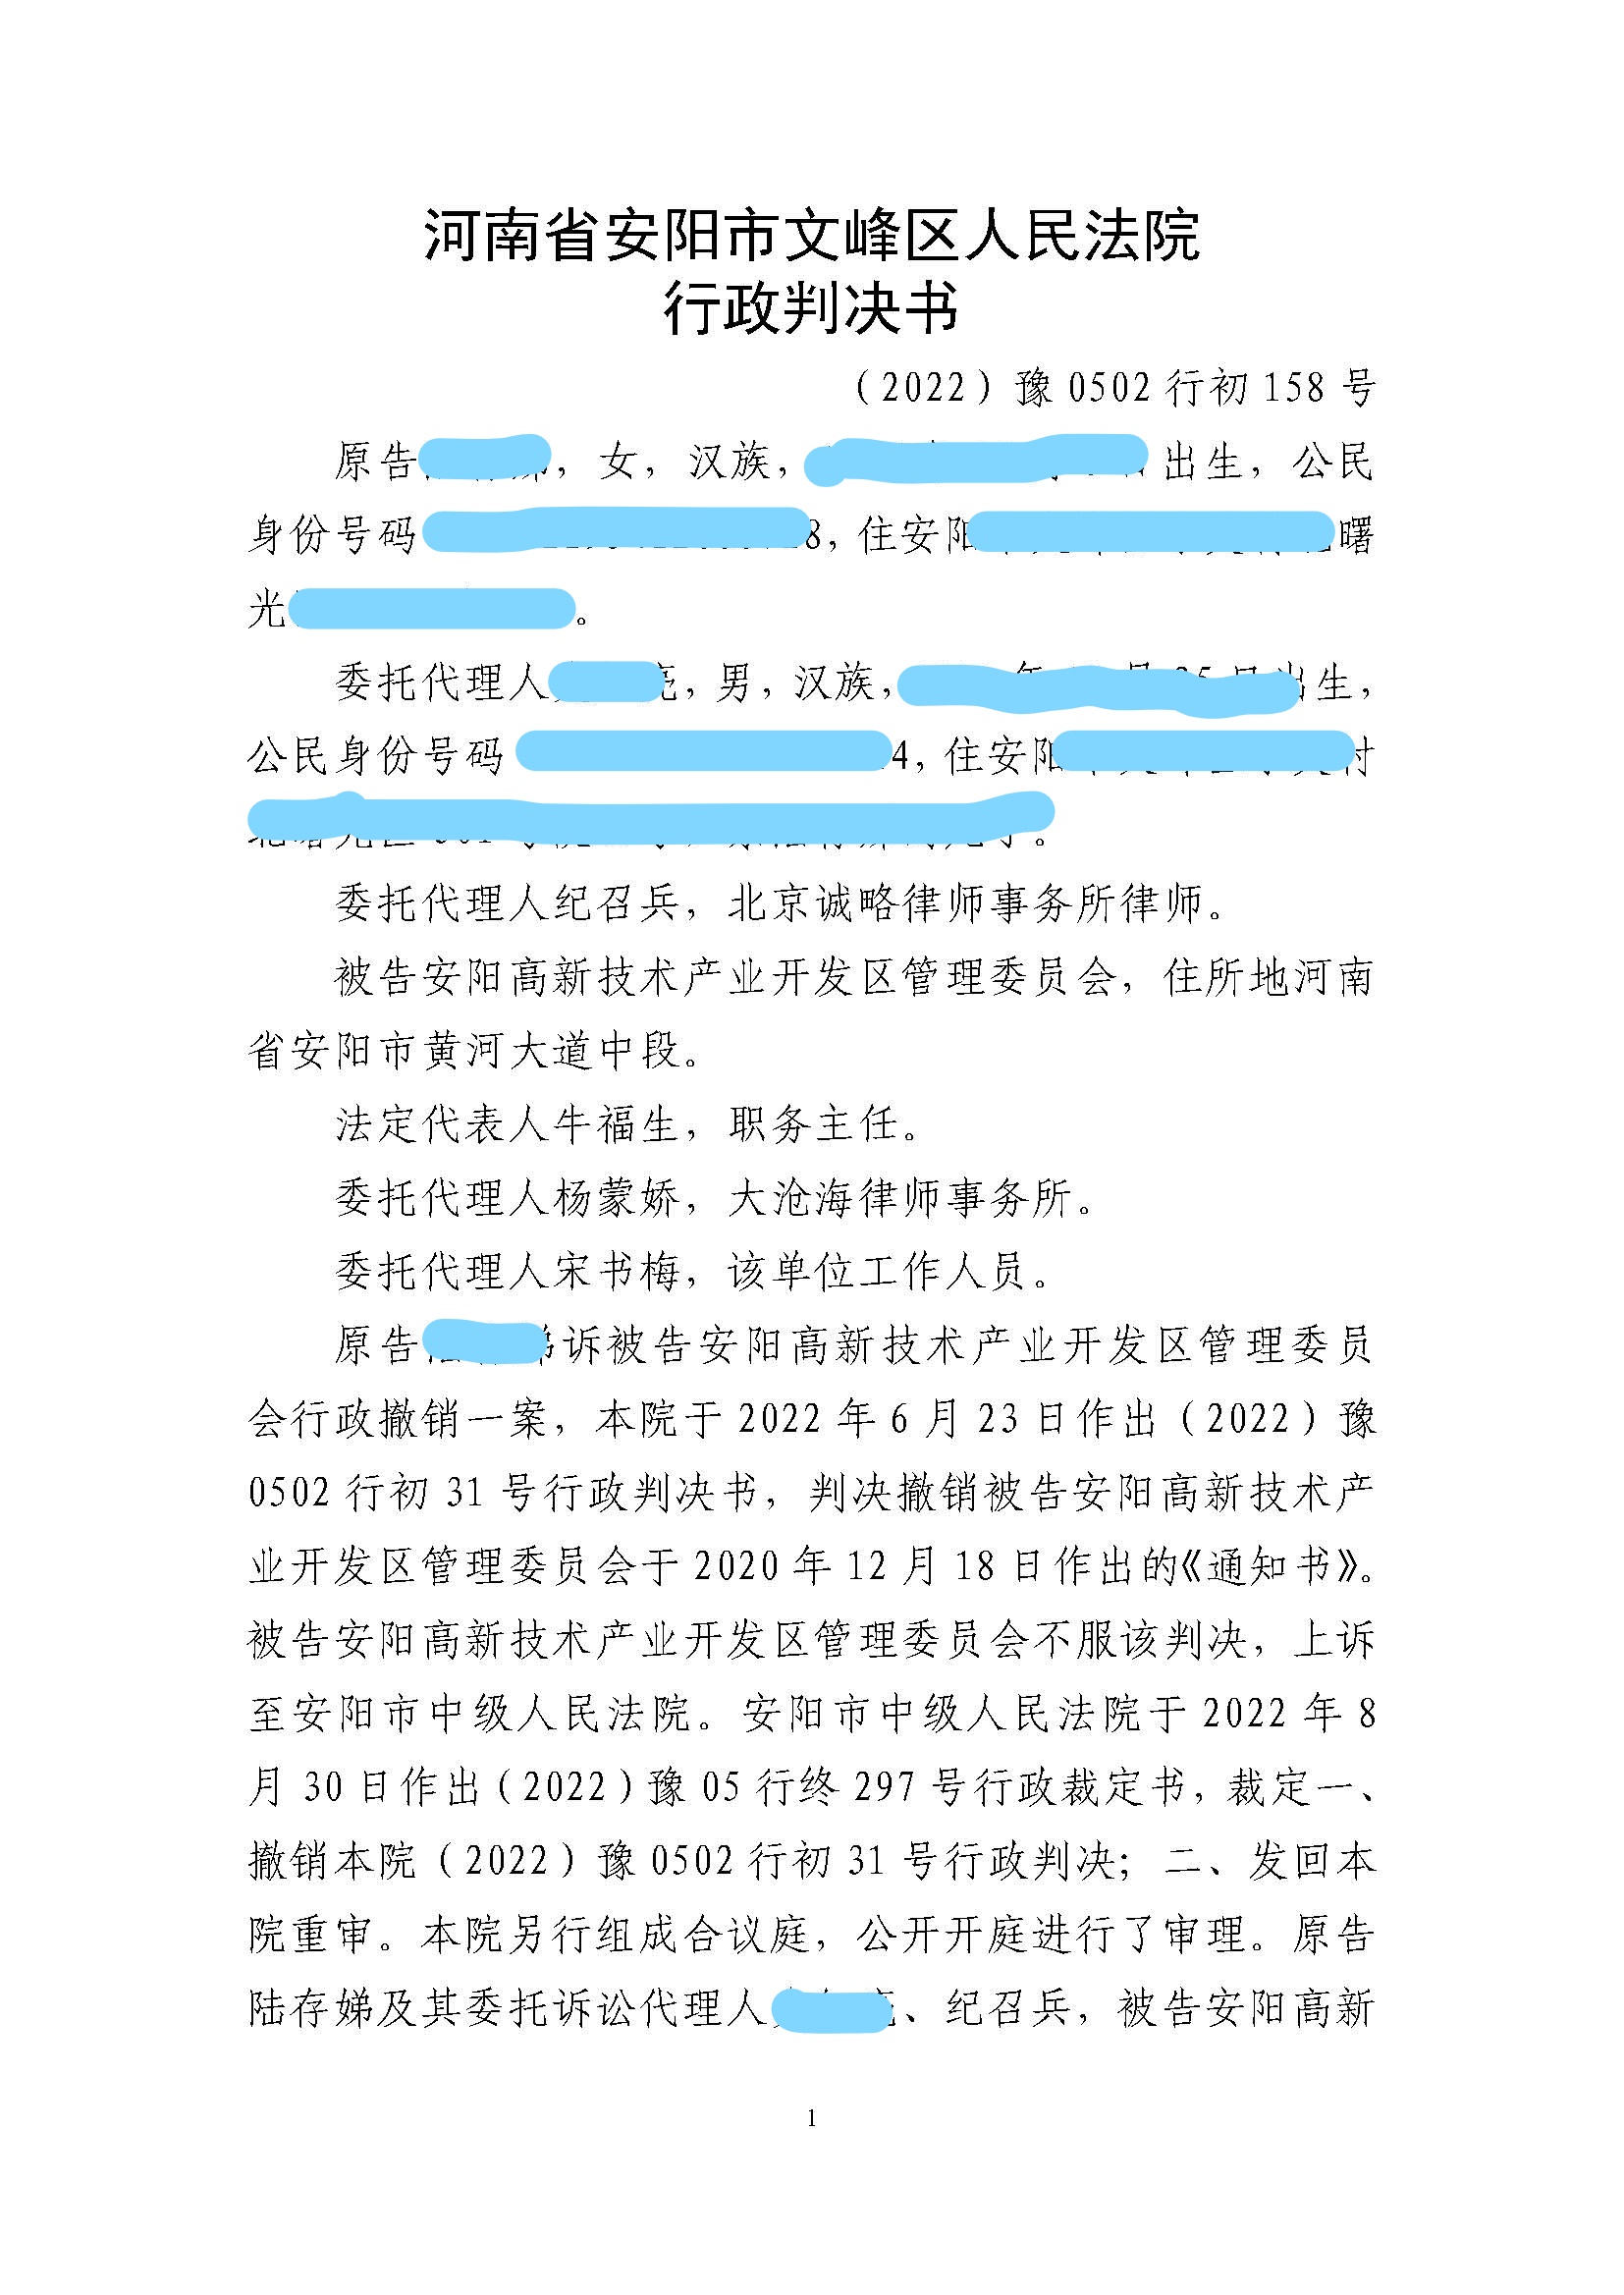 【河南省拆迁】河南省安阳市陆某与安阳高新技术产业开发区管理委员会撤销《通知书》一案